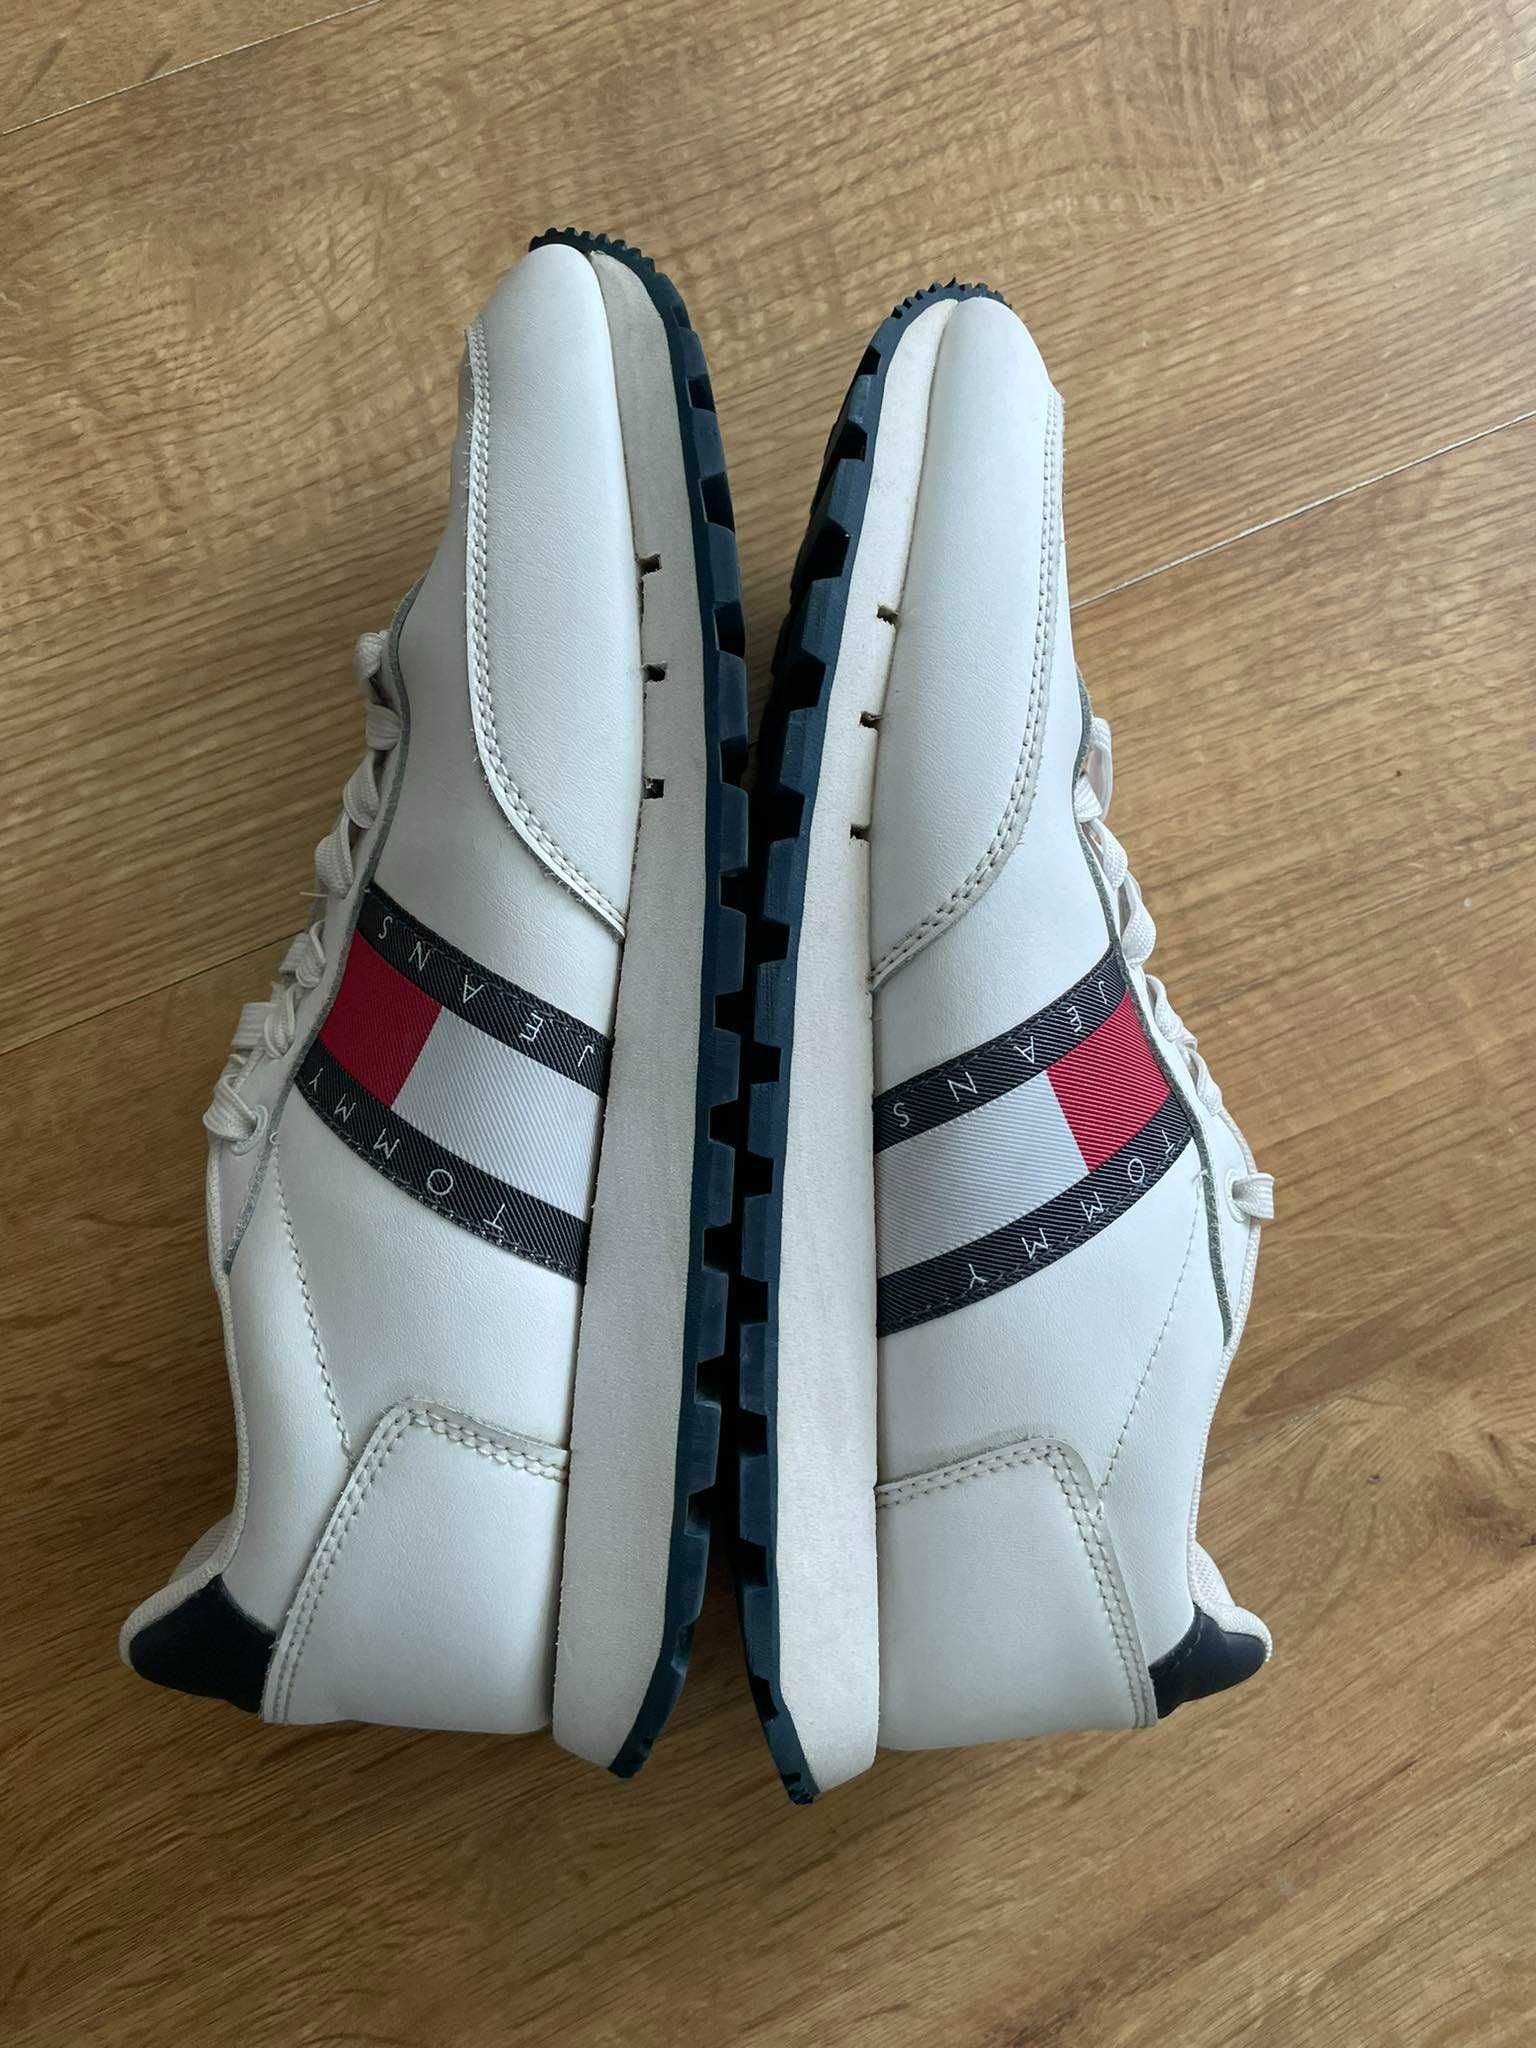 Tommy Jeans buty sneakersy białe 42 skkórzane